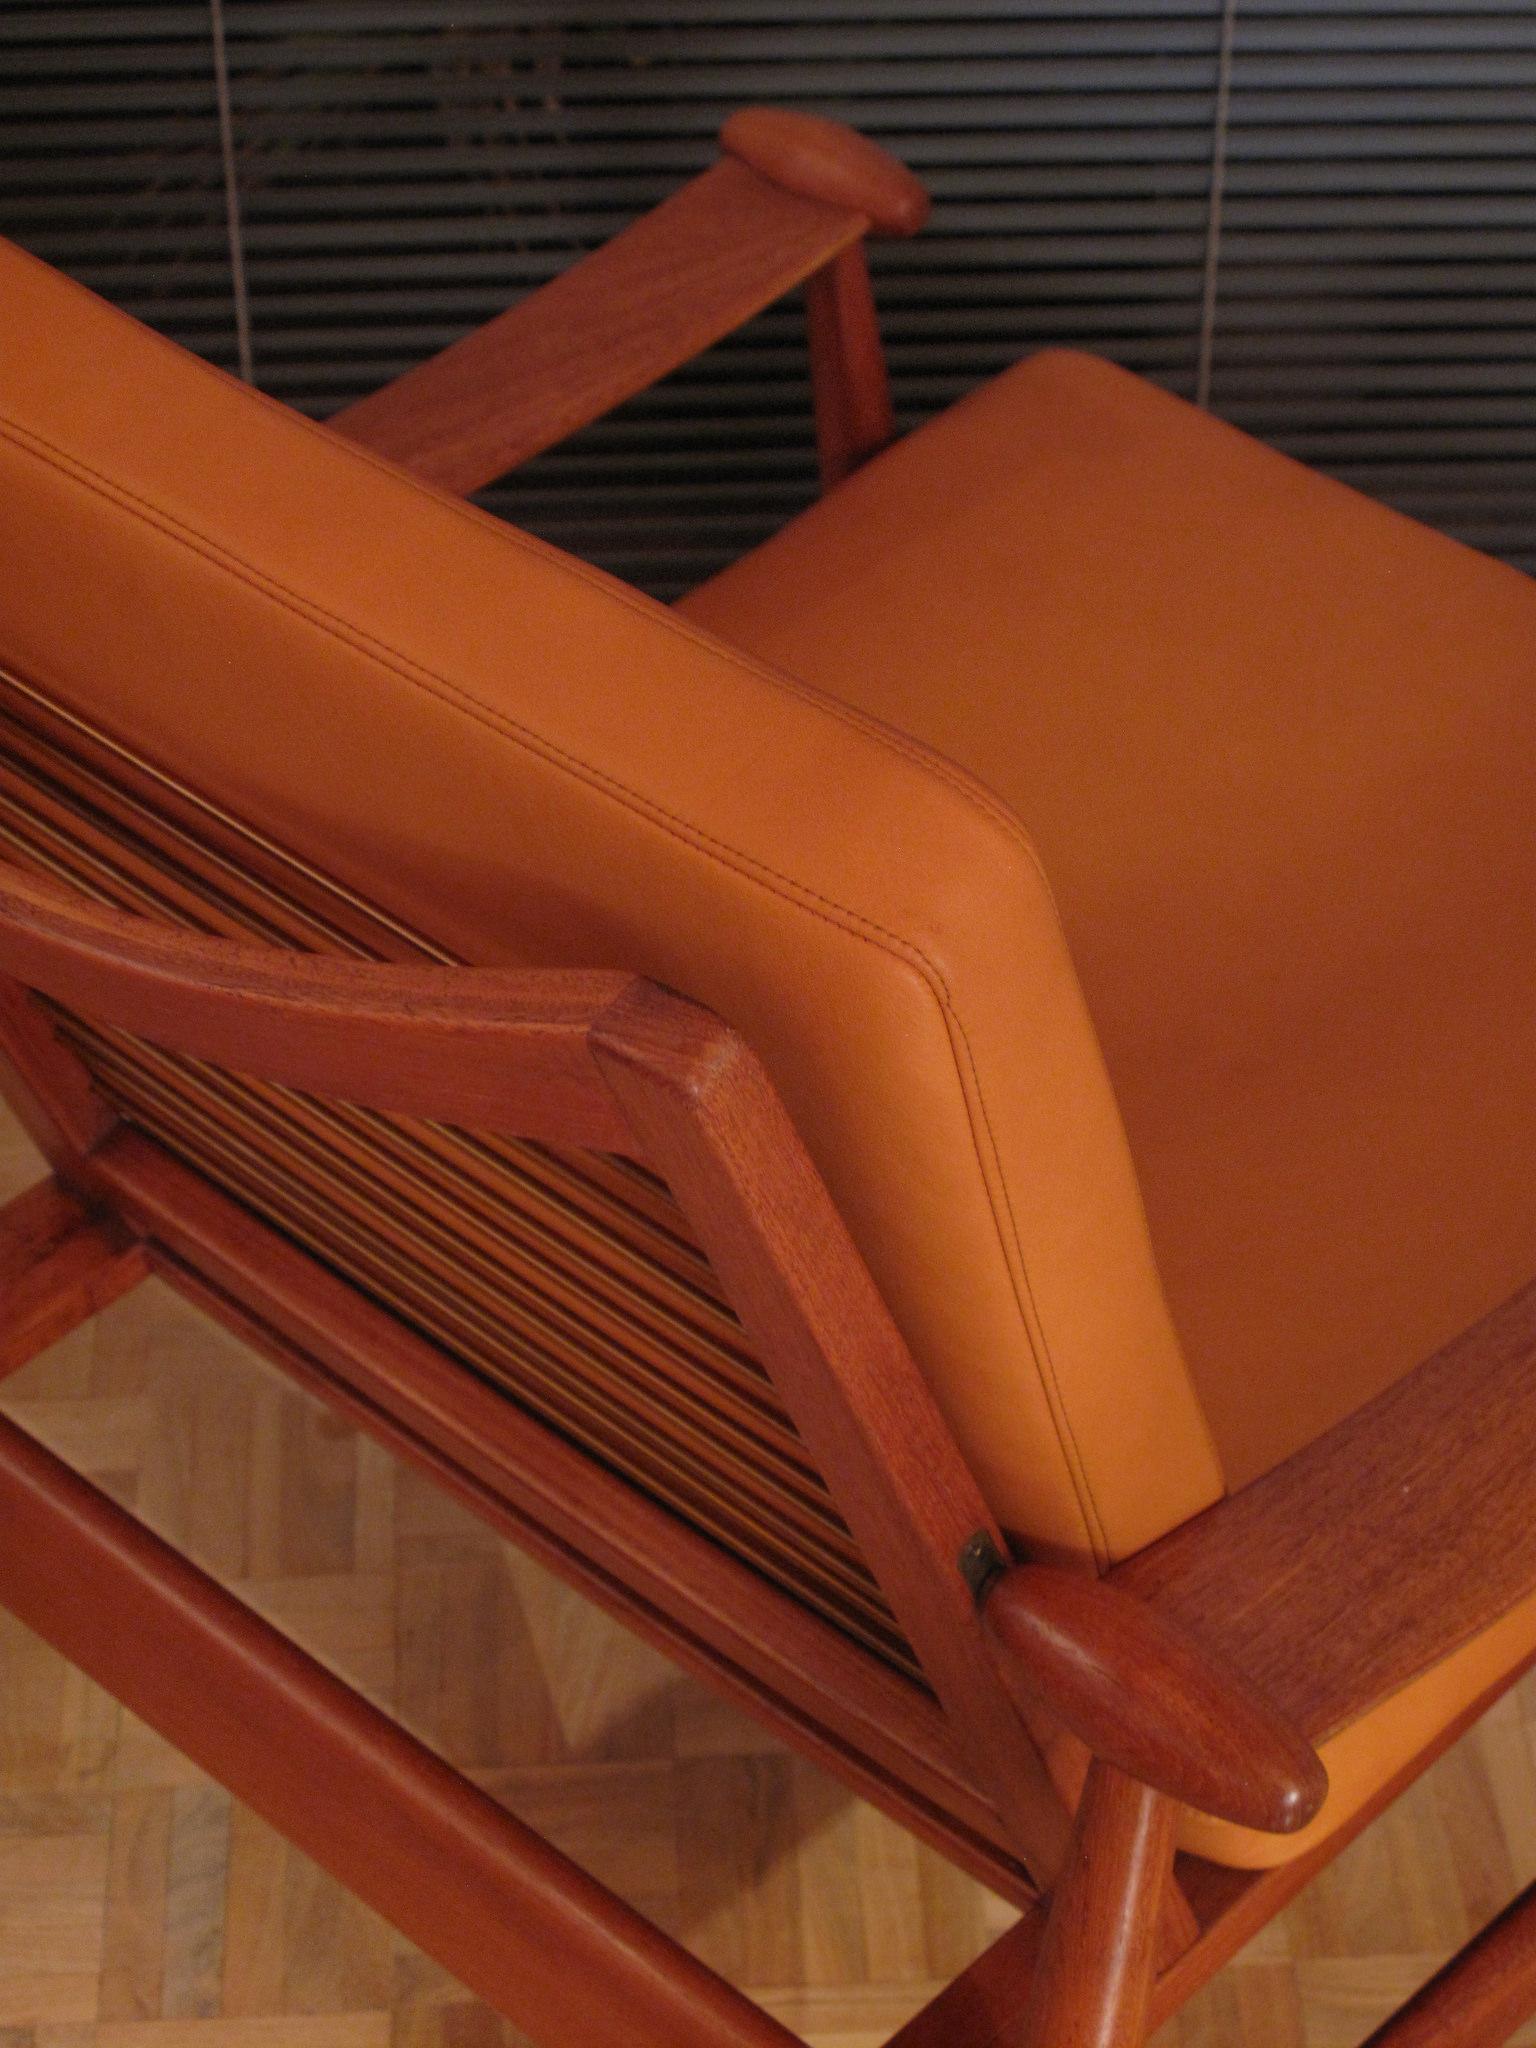 Finn Juhl Model 133 'Spadestolen' Teak and Leather Lounge Chair 5